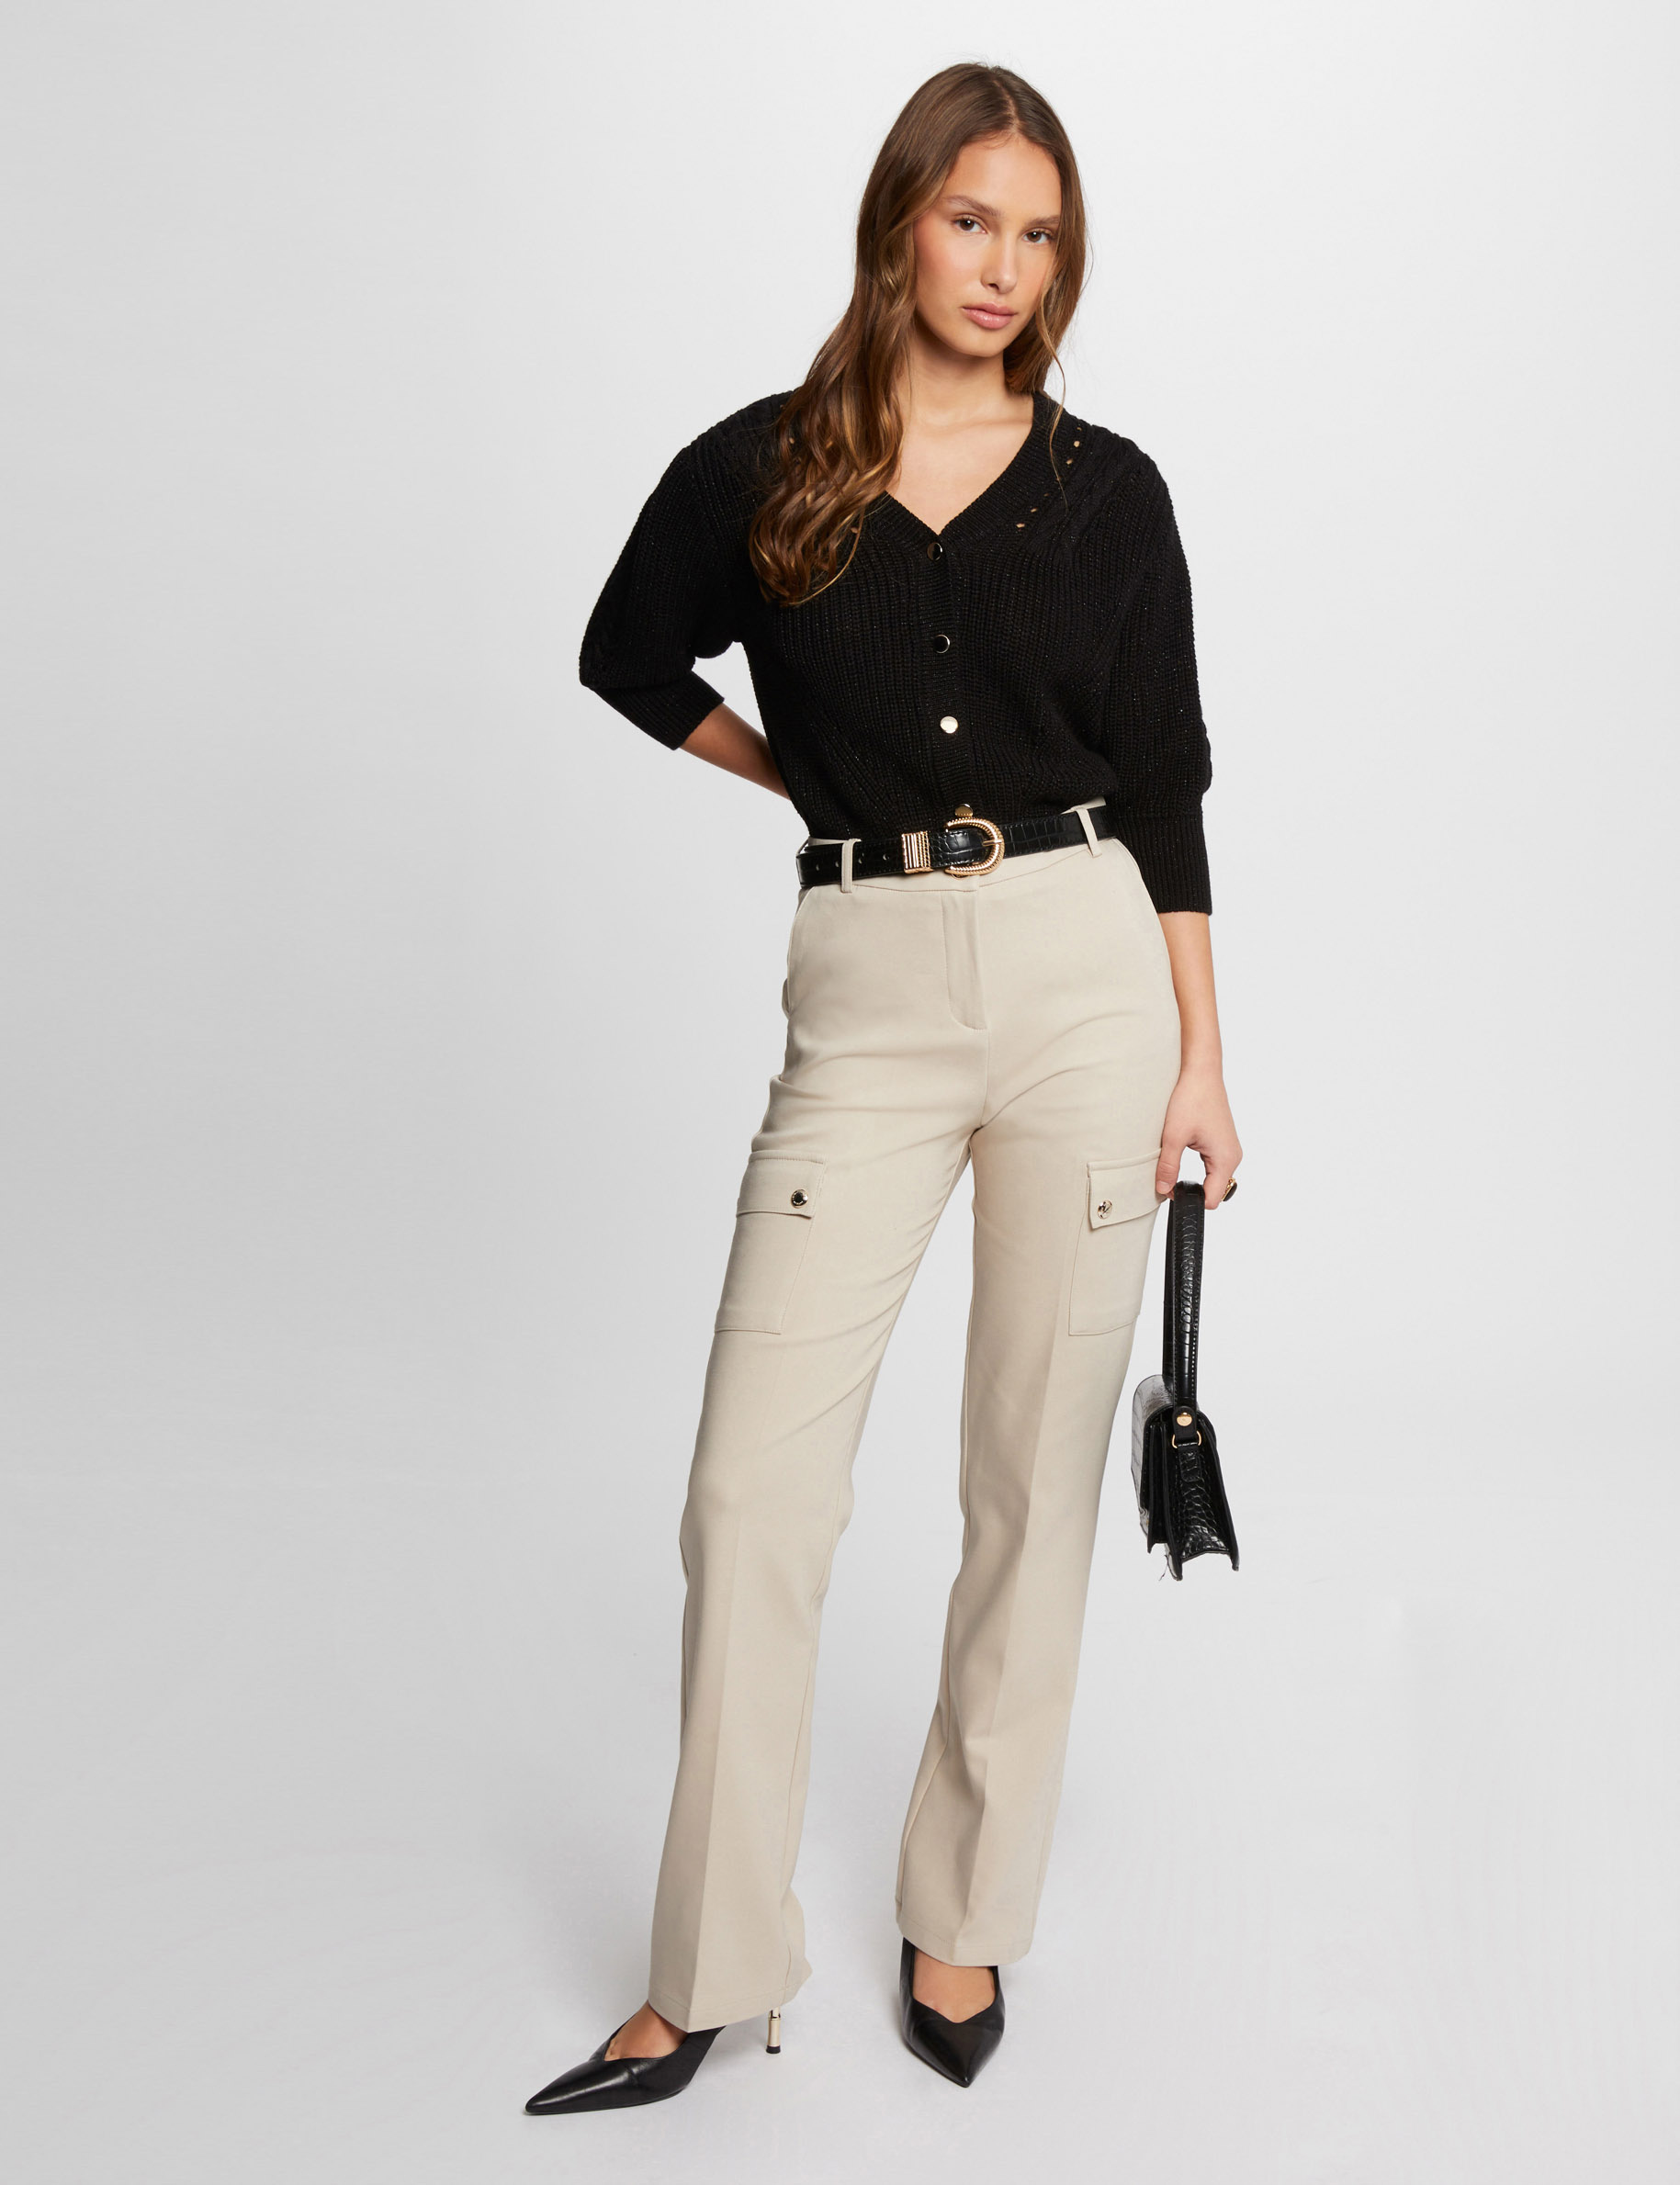 3/4-length sleeved cardigan black ladies'